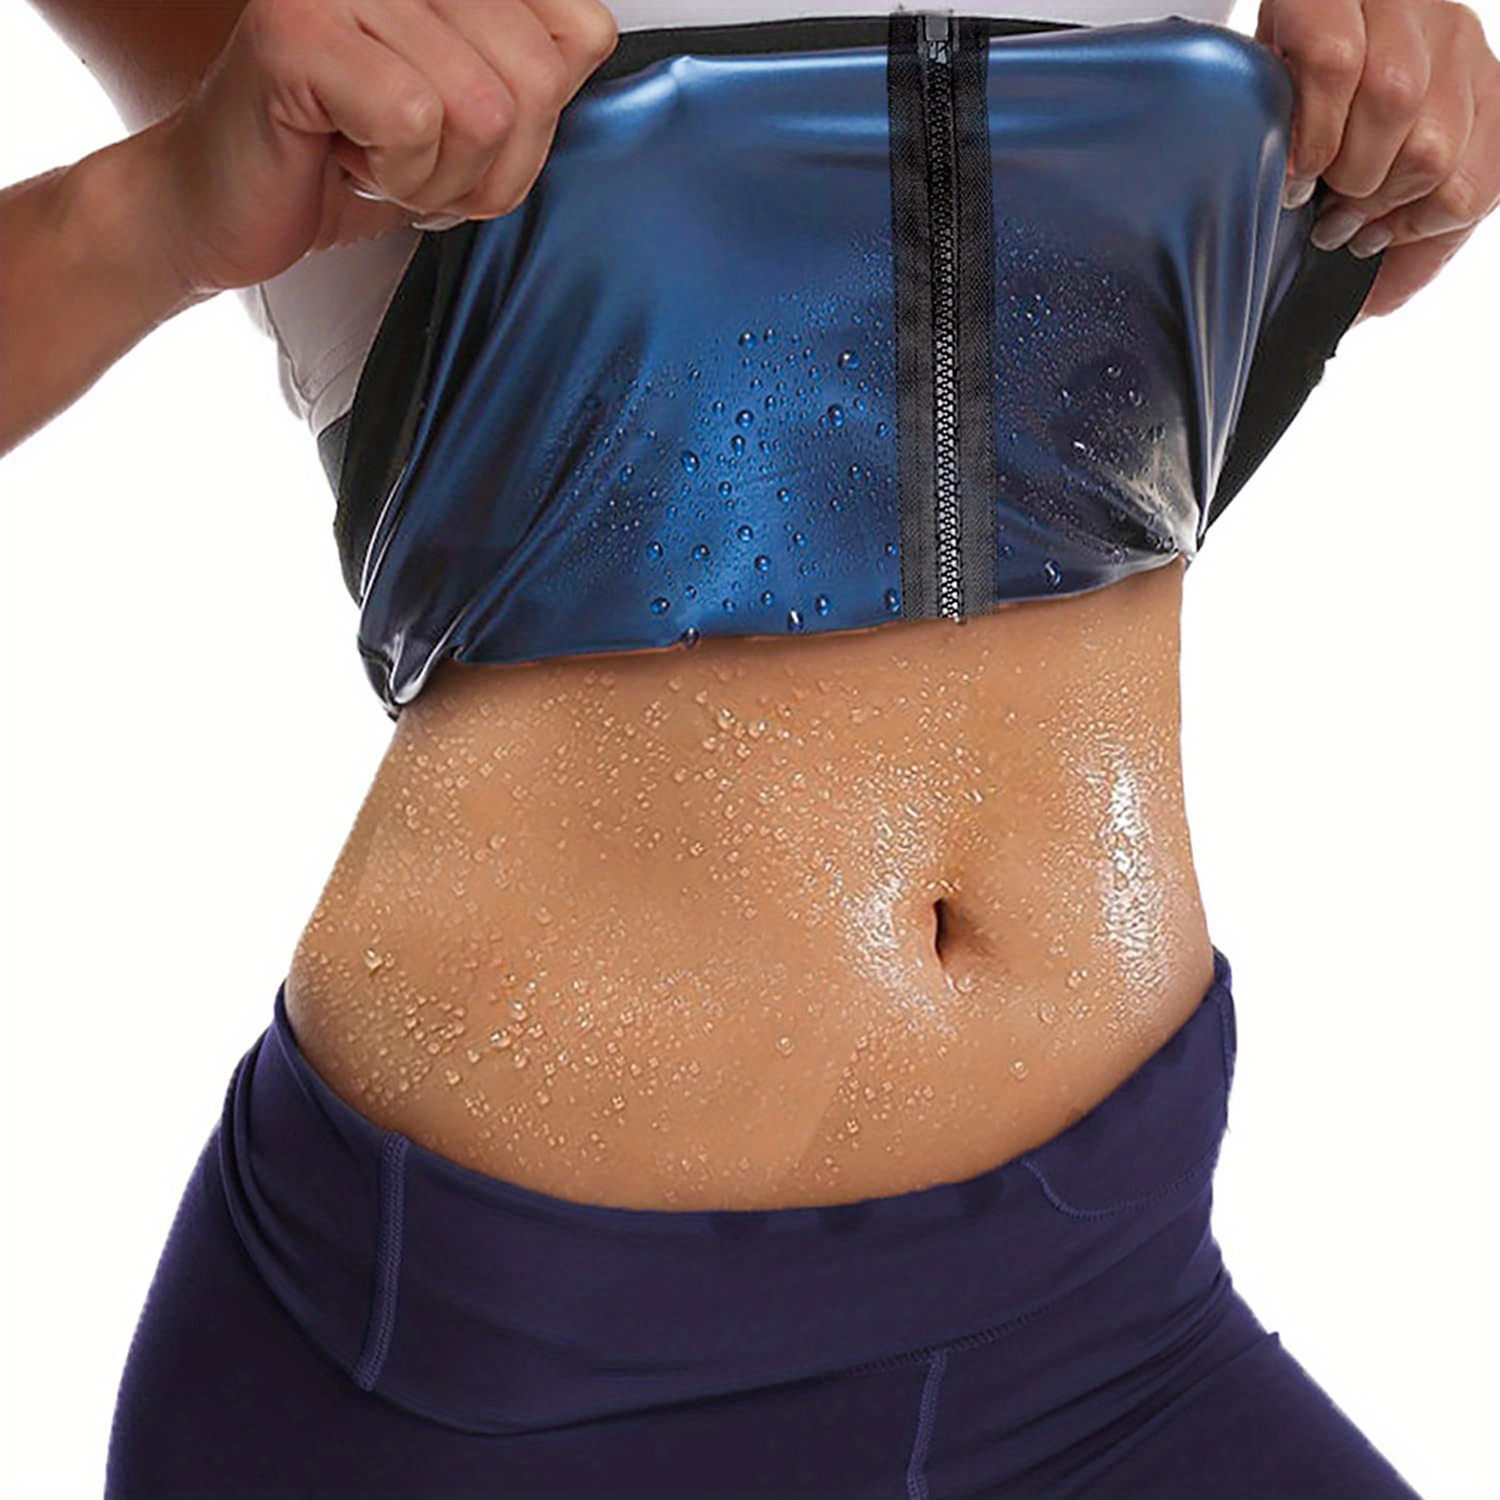 Neoprene Sweat Band Waist Trainer Women Men Lower Belly Fat Burn